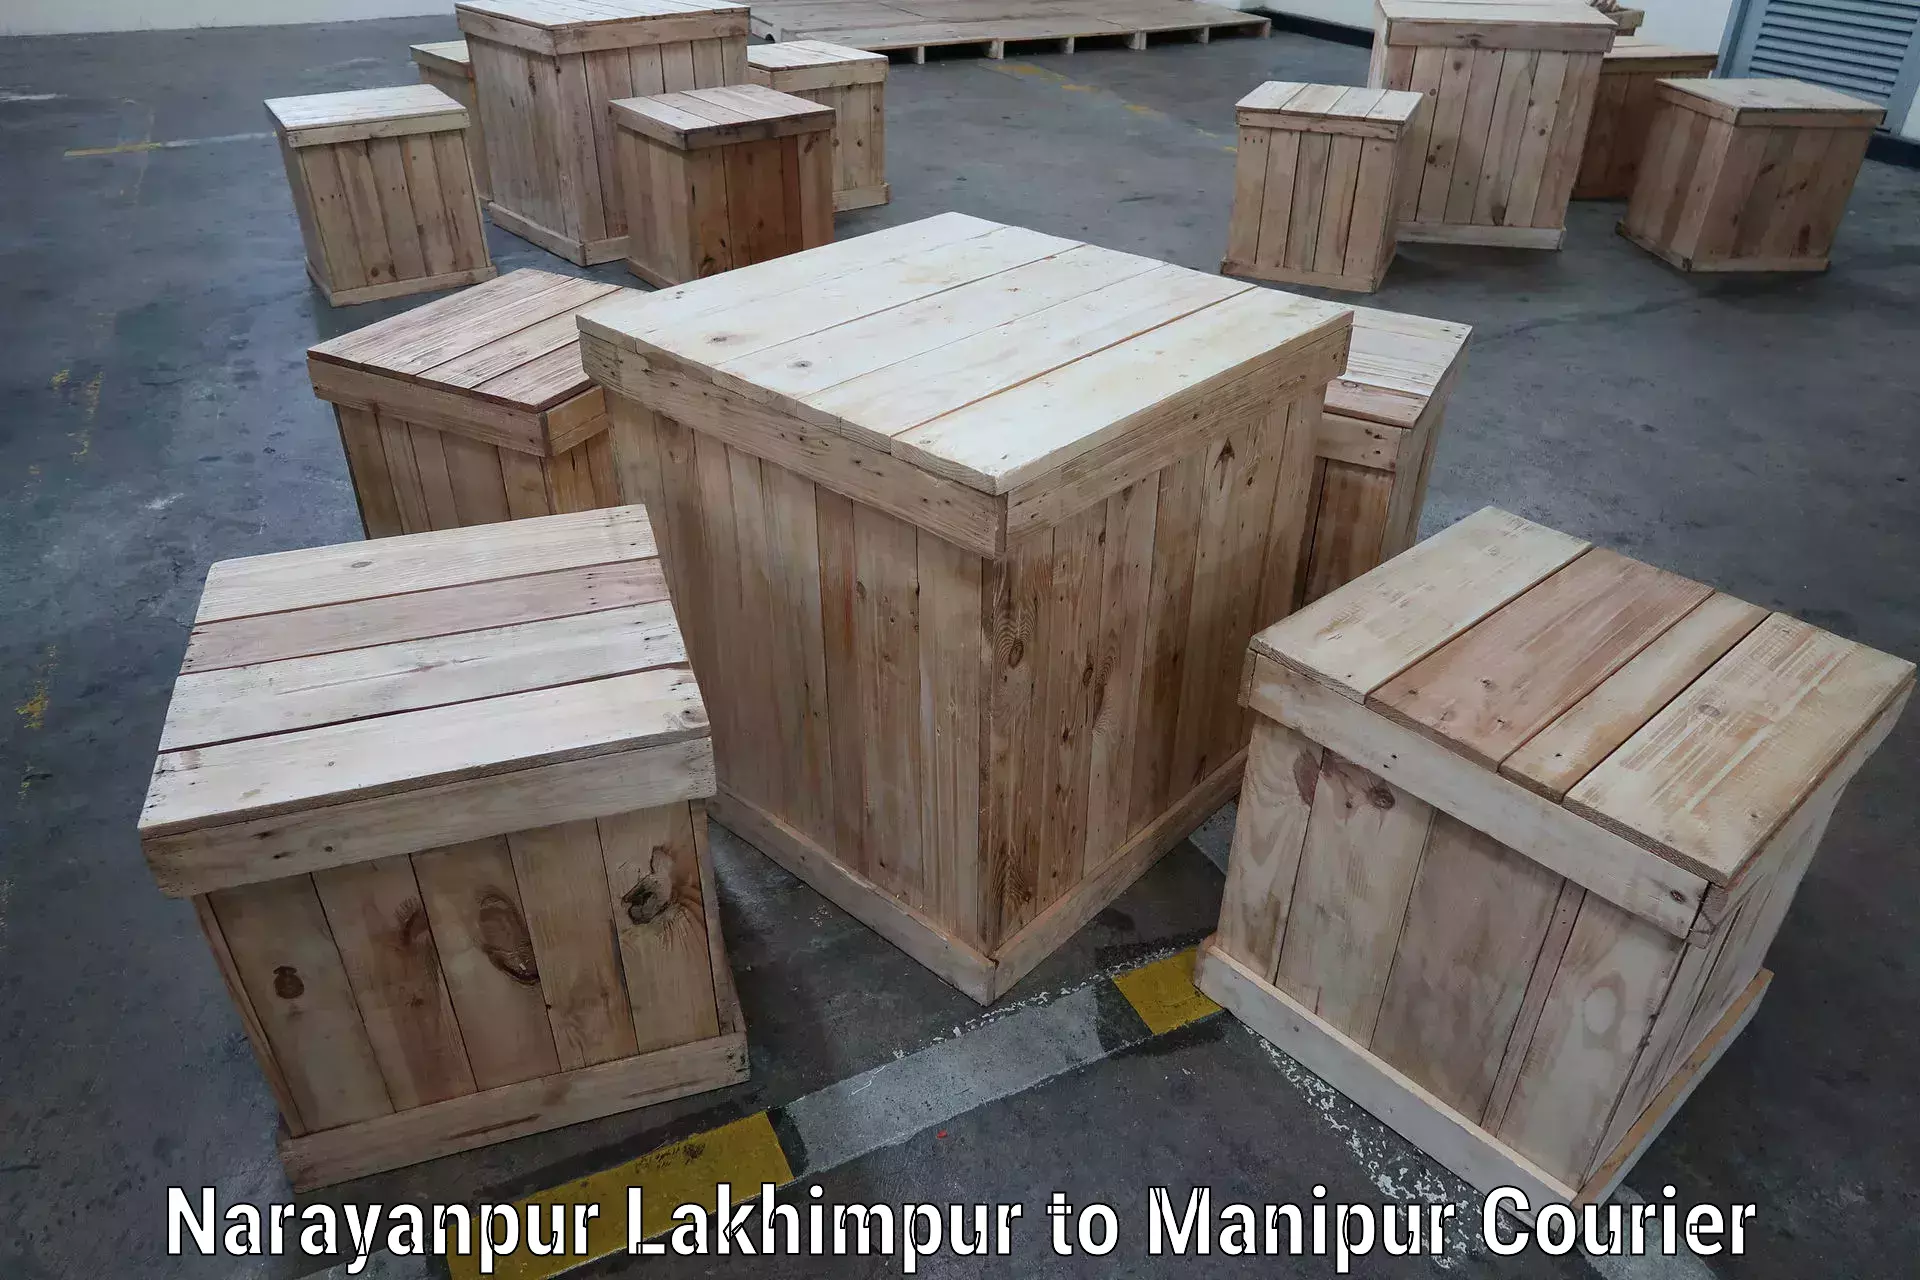 Seamless shipping experience Narayanpur Lakhimpur to Moirang